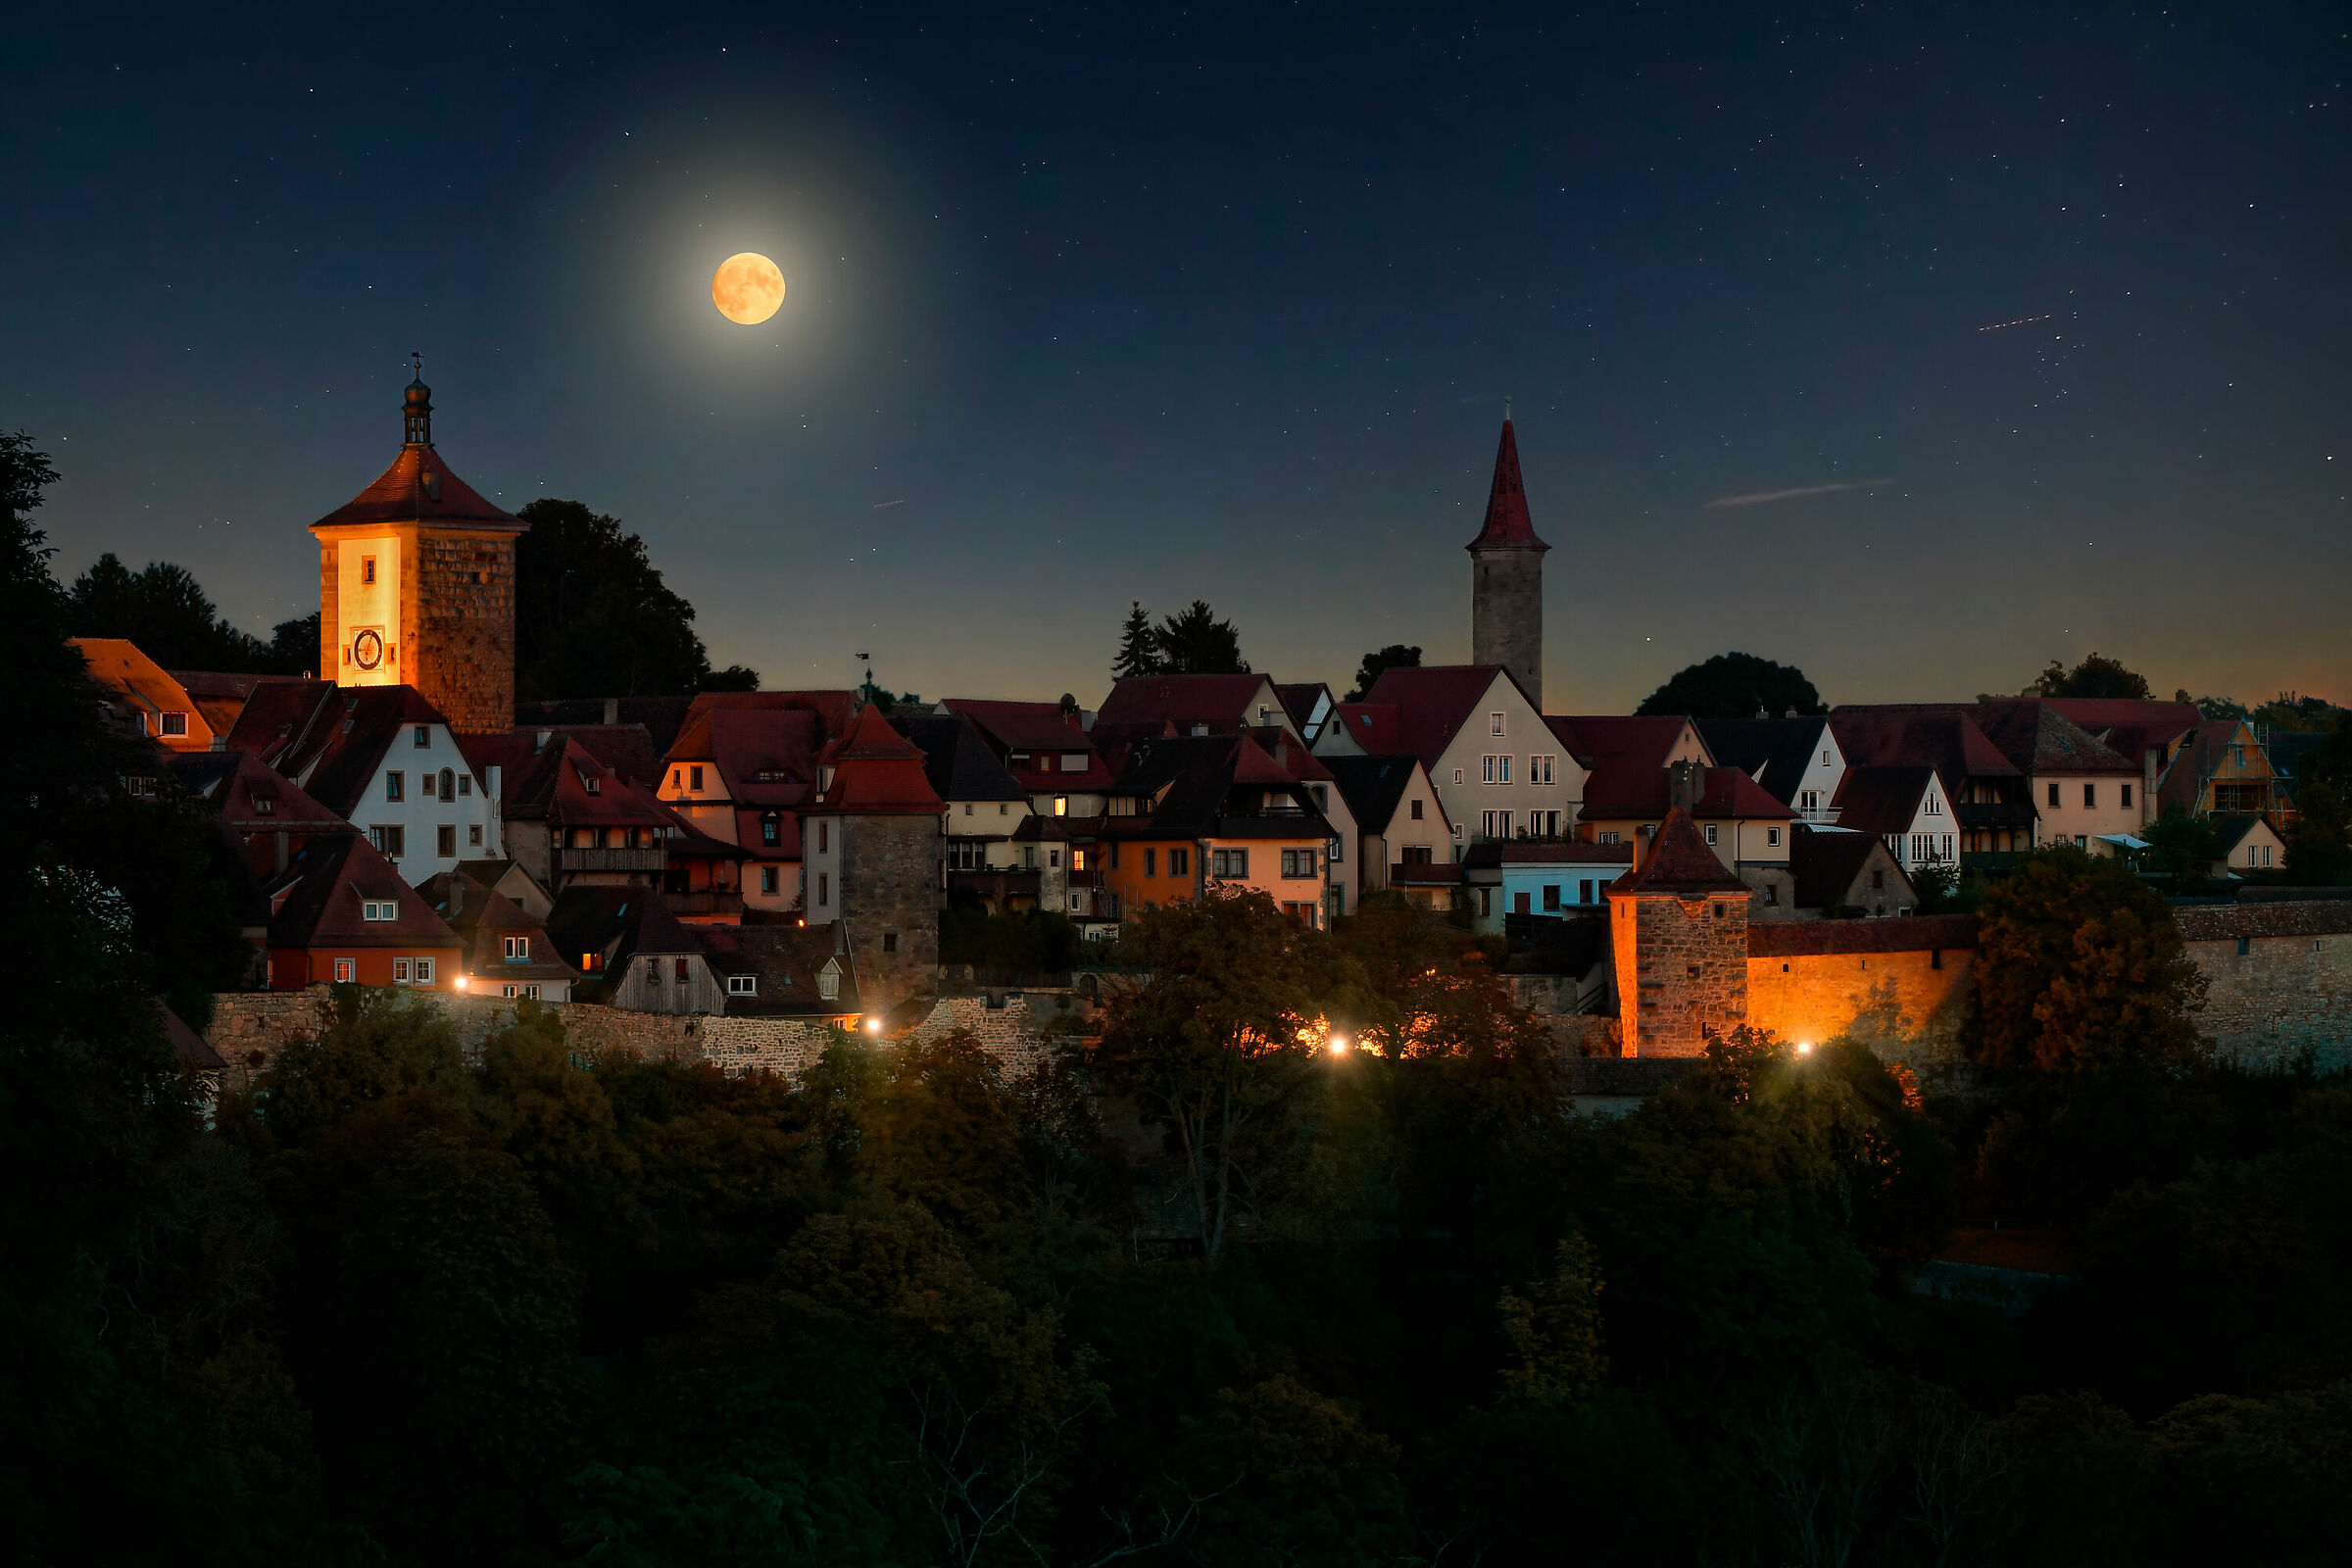 Full moon over Rothenburg...